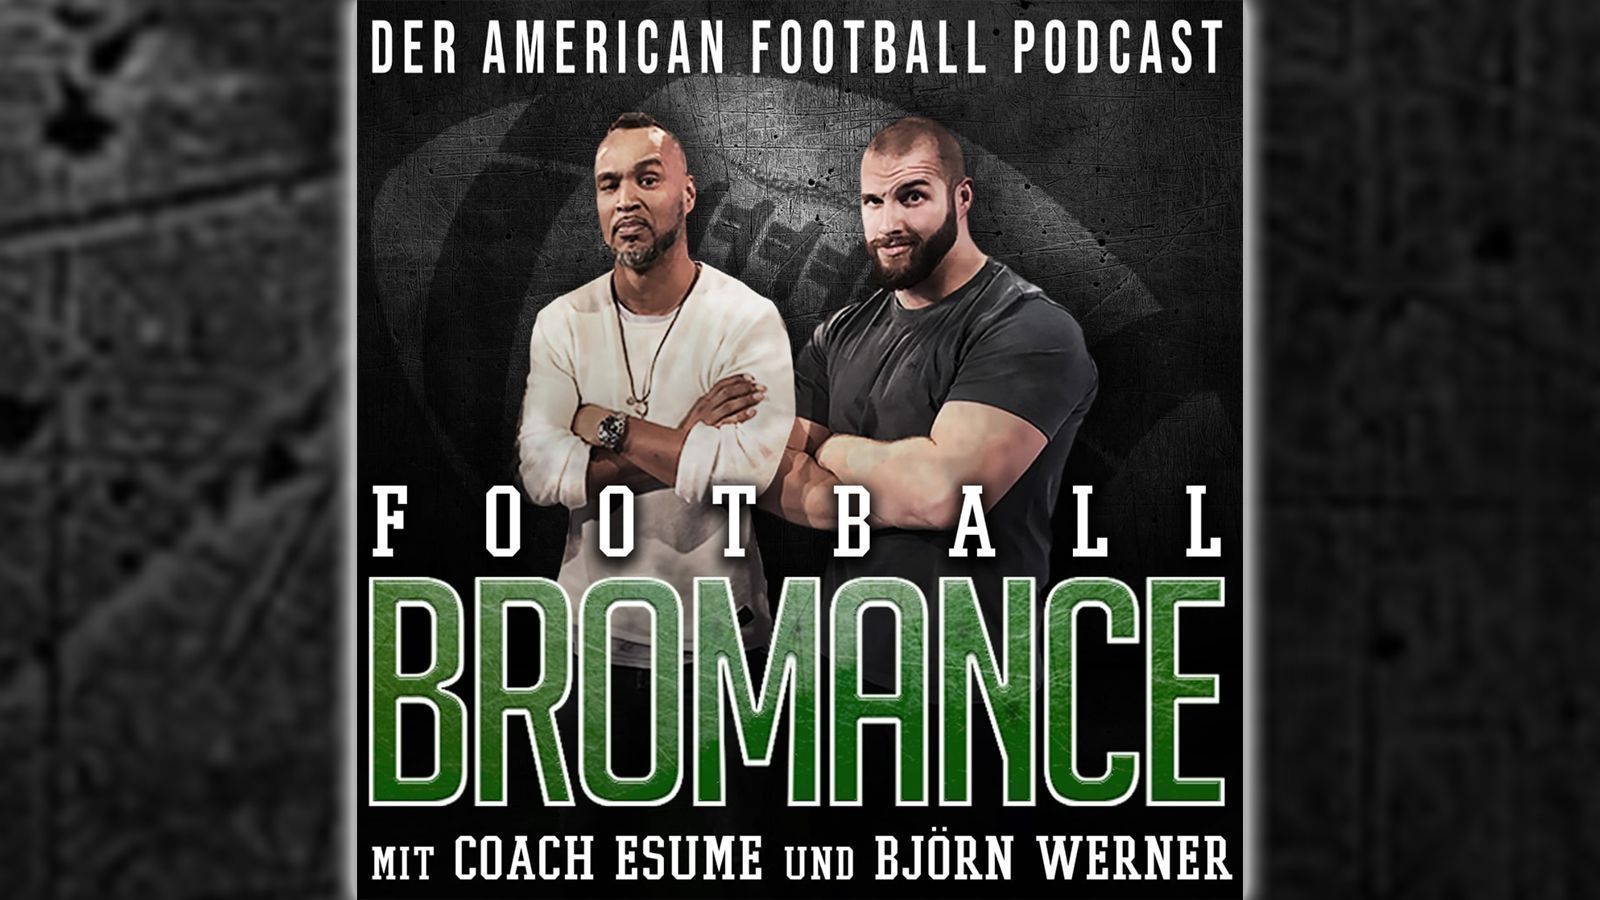 
                <strong>Podcast: Football Bromance</strong><br>
                "Coach" Esume und Björn Werner analysieren regelmäßig die neuesten Geschehnisse rund um die NFL und den College-Football.
              